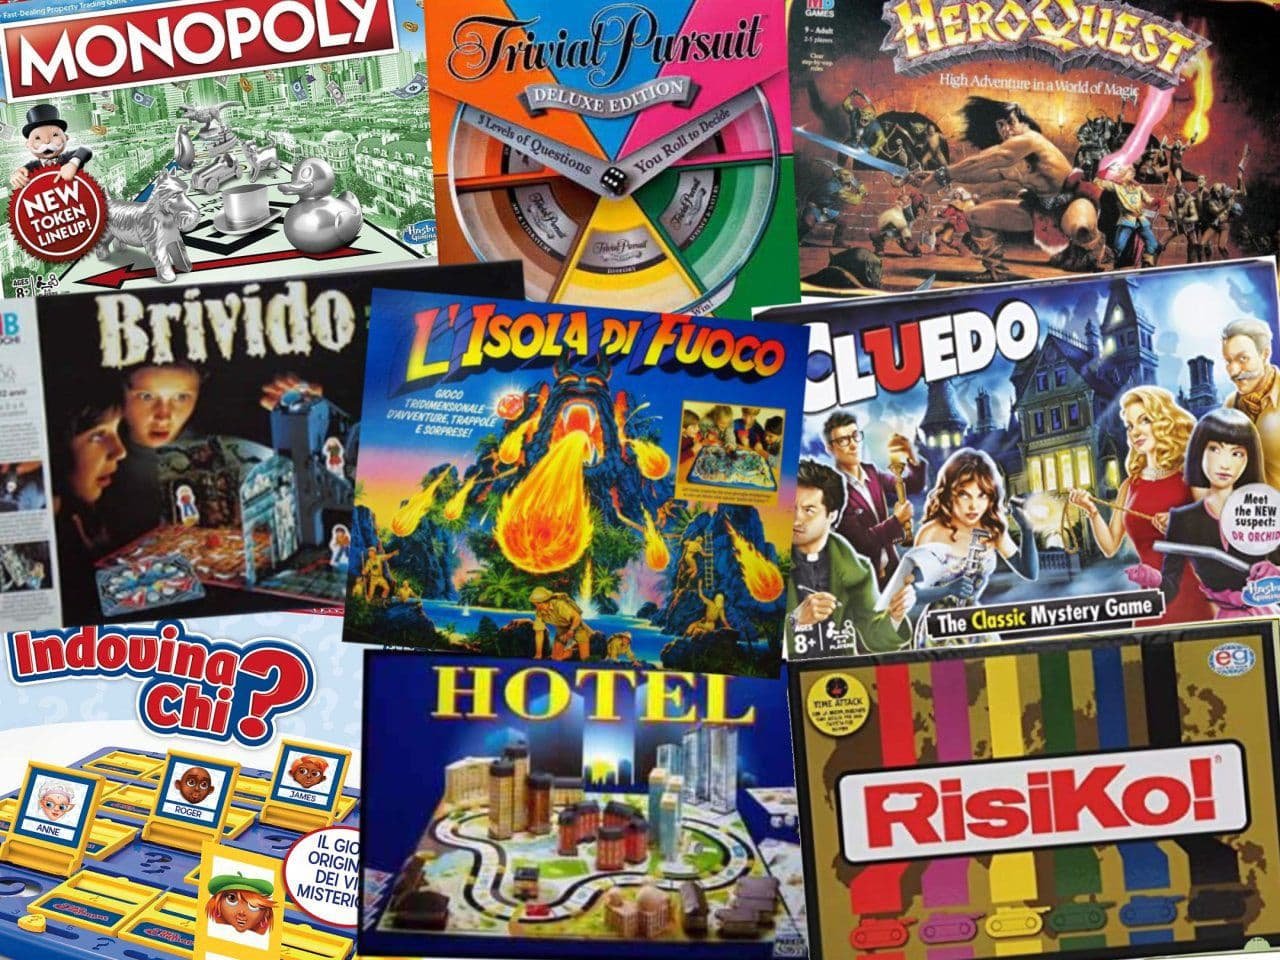 RisiKo, Monopoli, Cluedo? Alternative moderne ai classici del passato | La  Tana dei Goblin